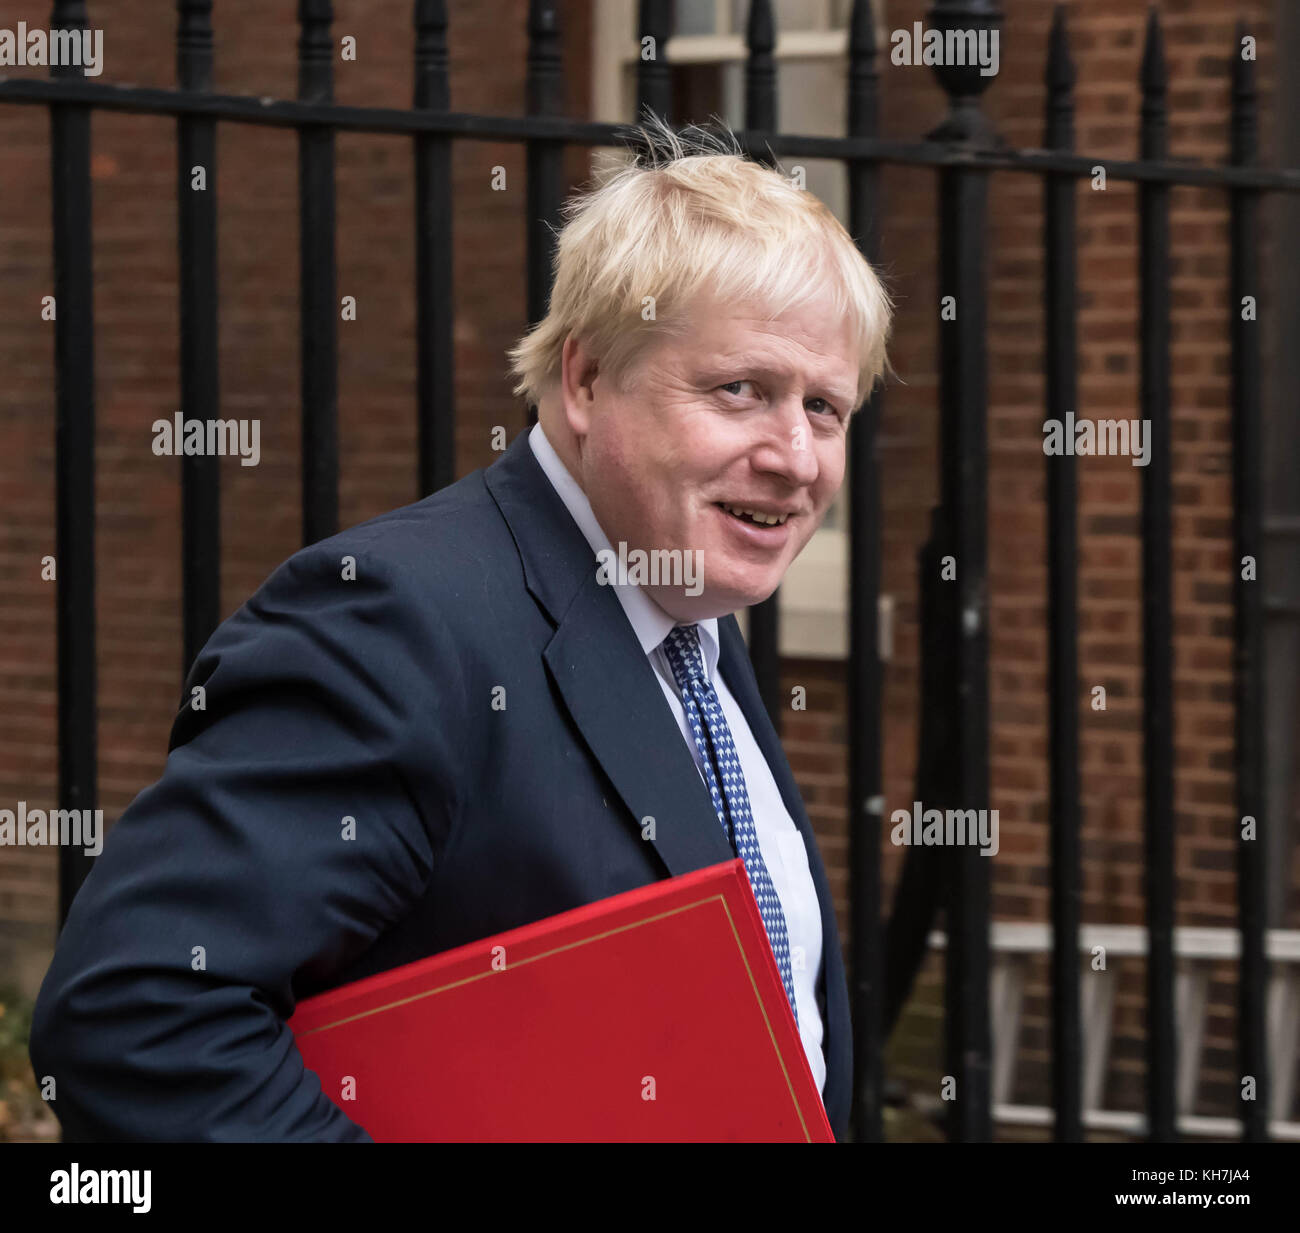 London, Großbritannien. 14 Nov, 2017. Boris kommt an der Downing Street für eine Sitzung des Ausschusses für Kredit johnson Außenminister: Ian Davidson/alamy leben Nachrichten Stockfoto